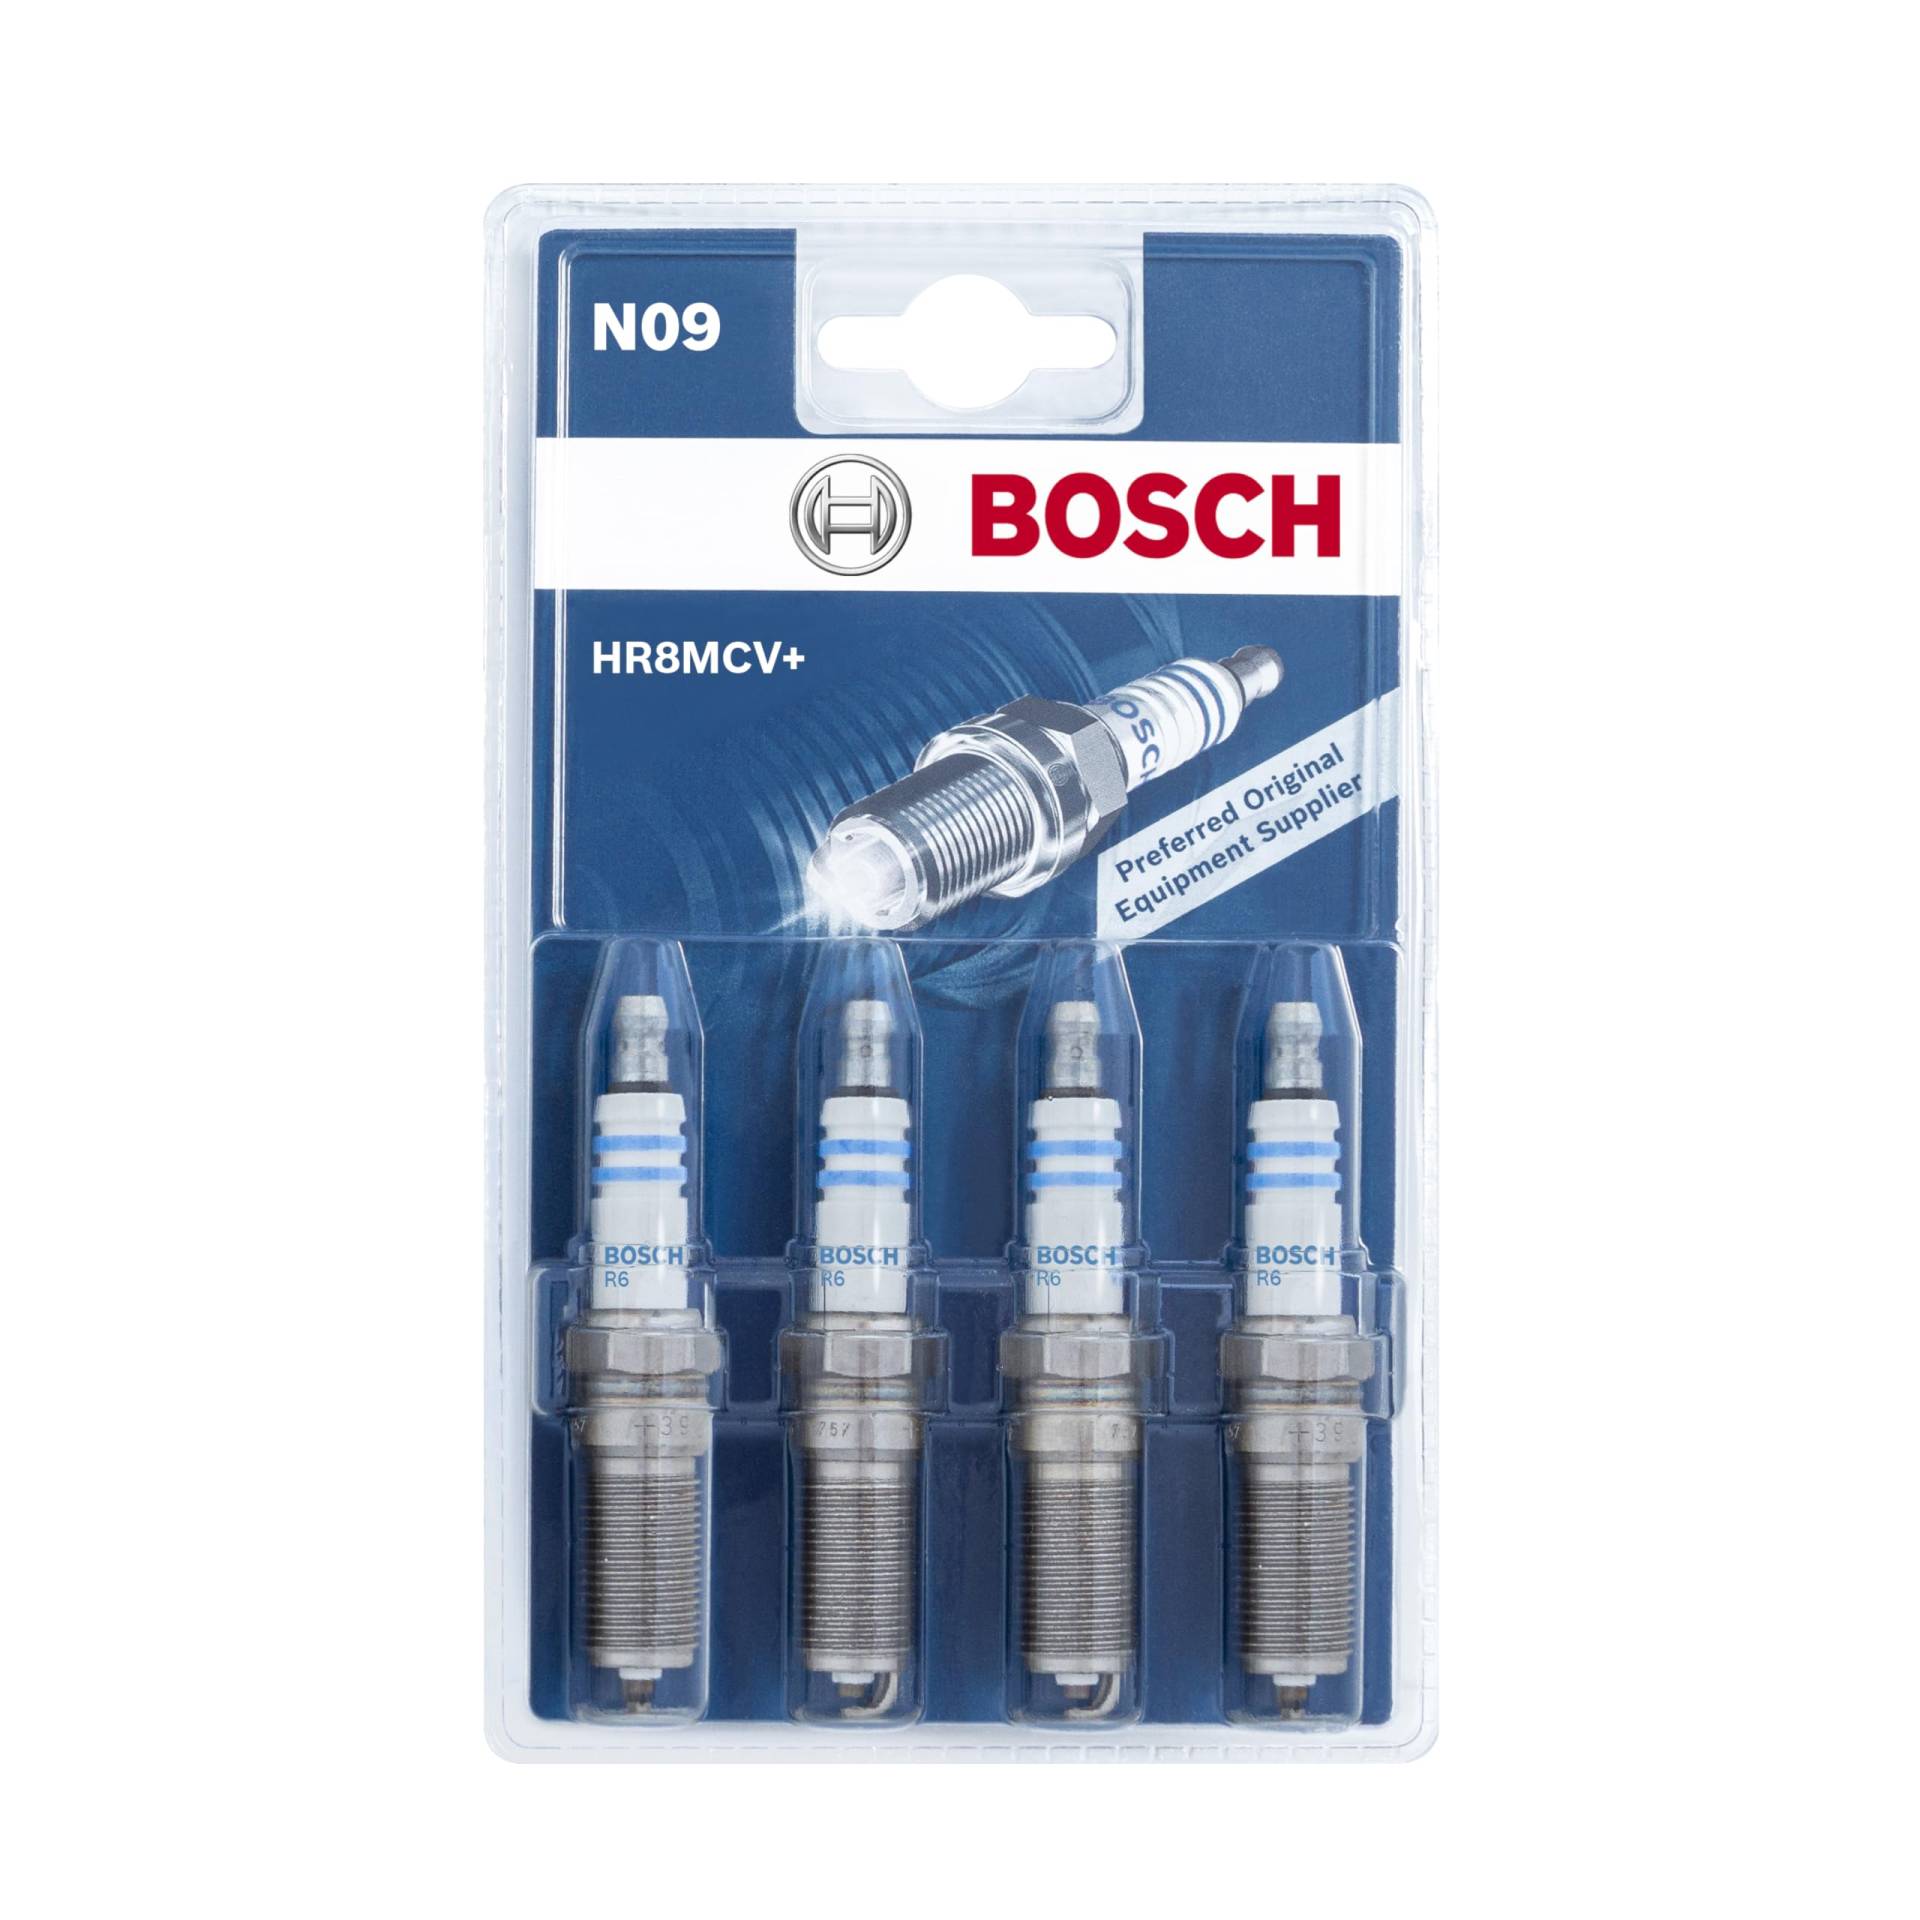 Bosch HR8MCV+ (N09) - Nickel Zündkerzen - 4er Set von Bosch Automotive